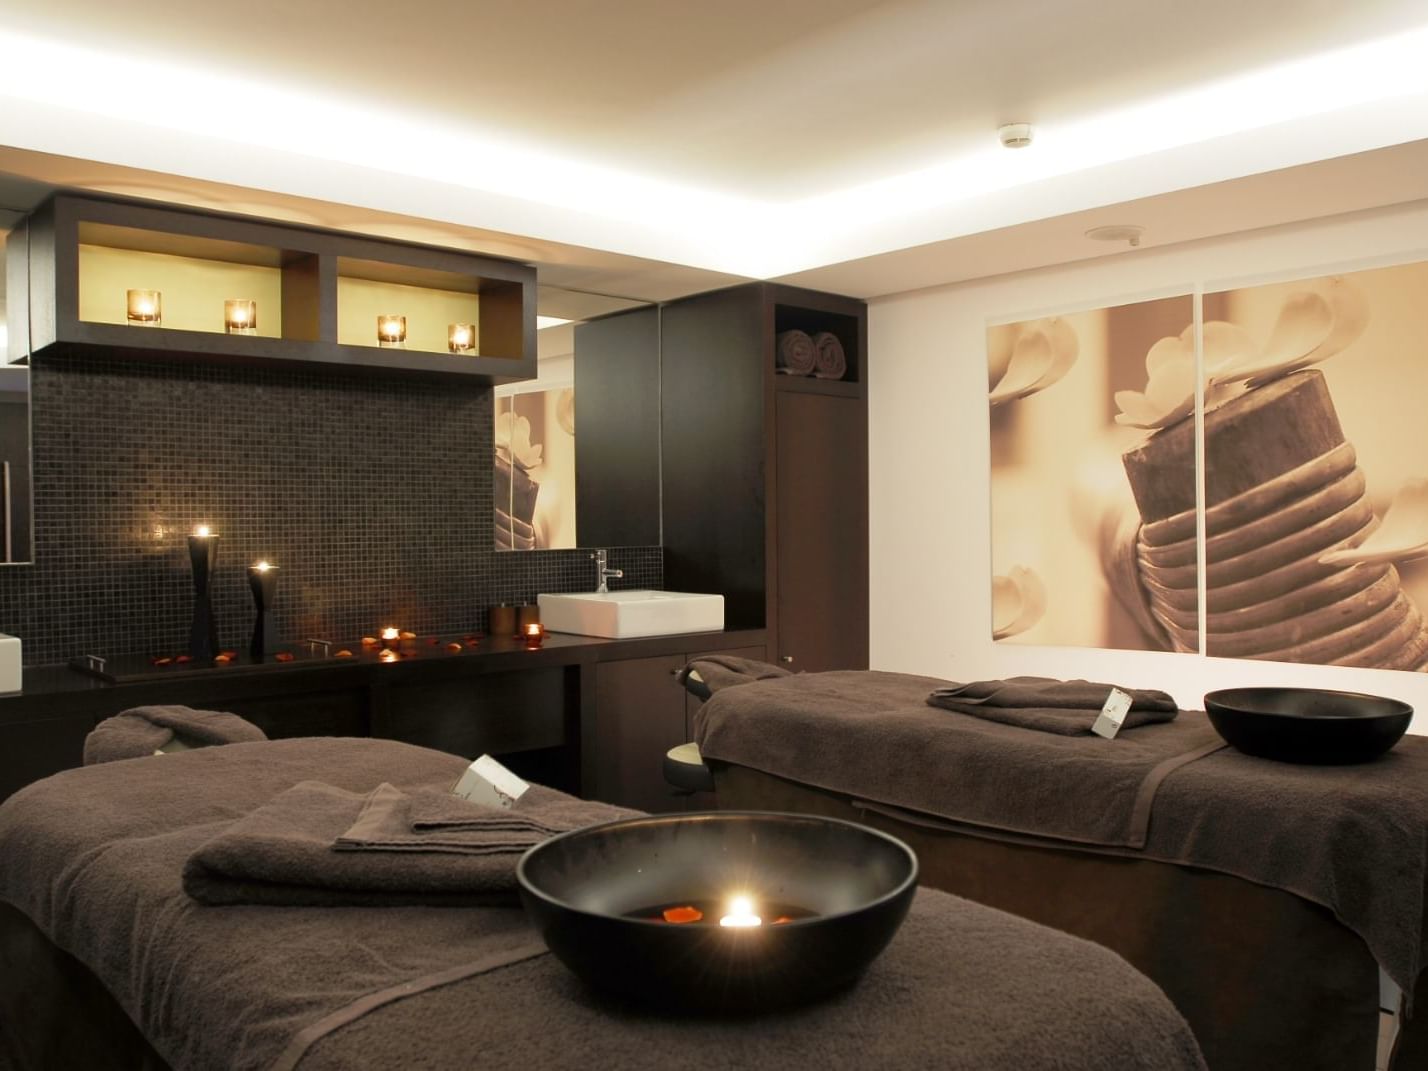 Camas de massagens no Spa do Hotel Cascais Miragem